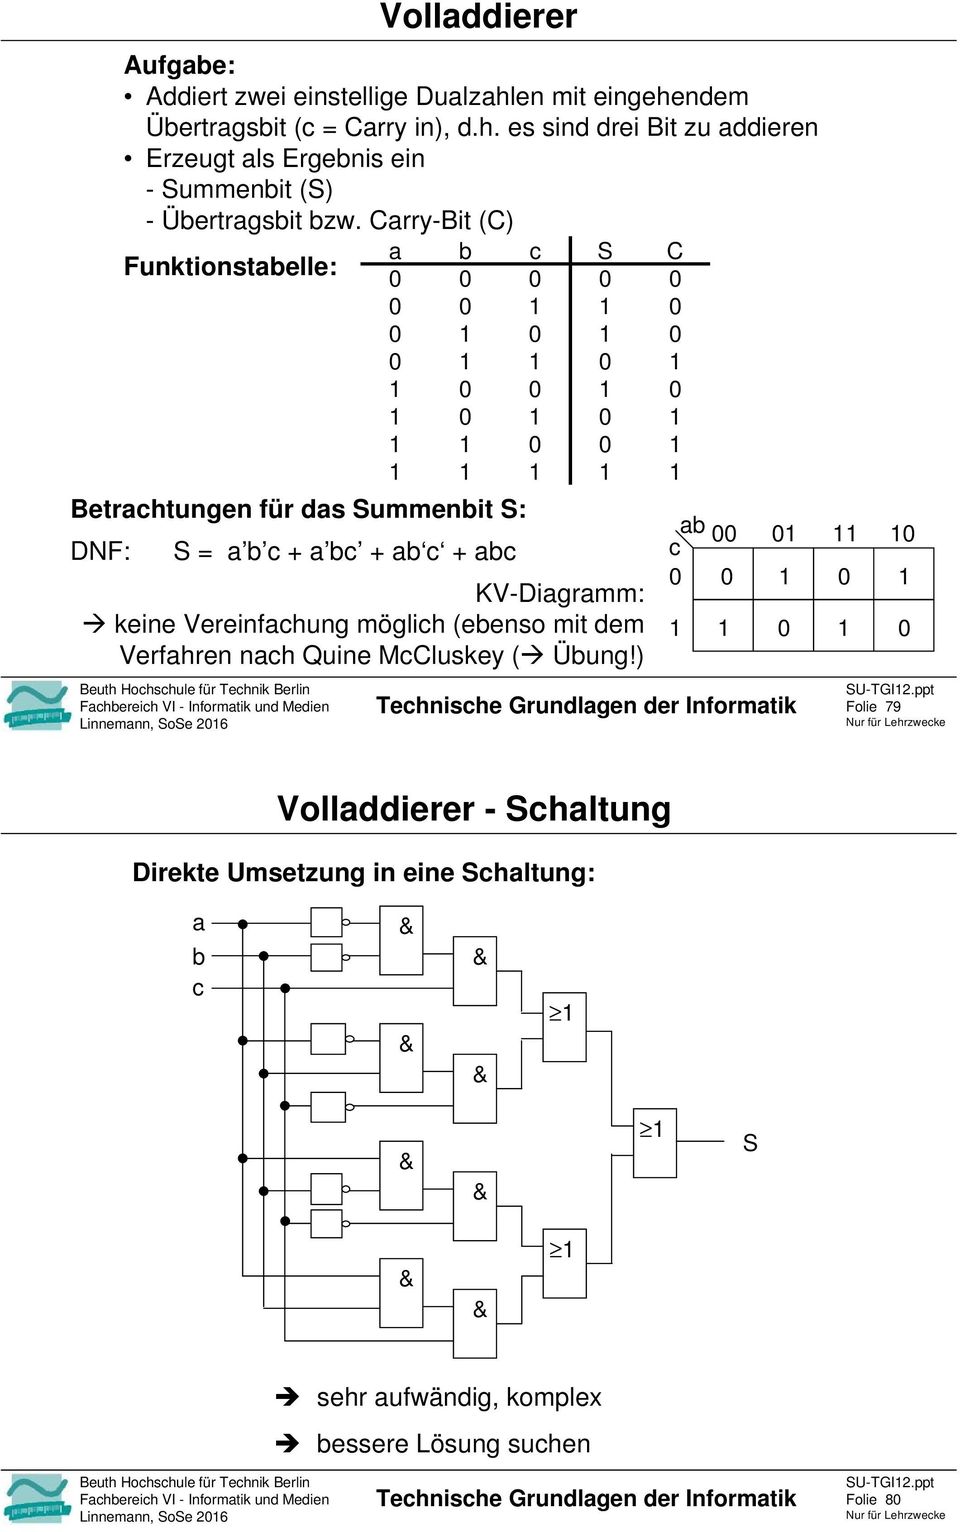 ) Fhereih VI - Informtik und Medien Linnemnn, SoSe 26 Vollddierer Tehnishe Grundlgen der Informtik SU-TGI2.